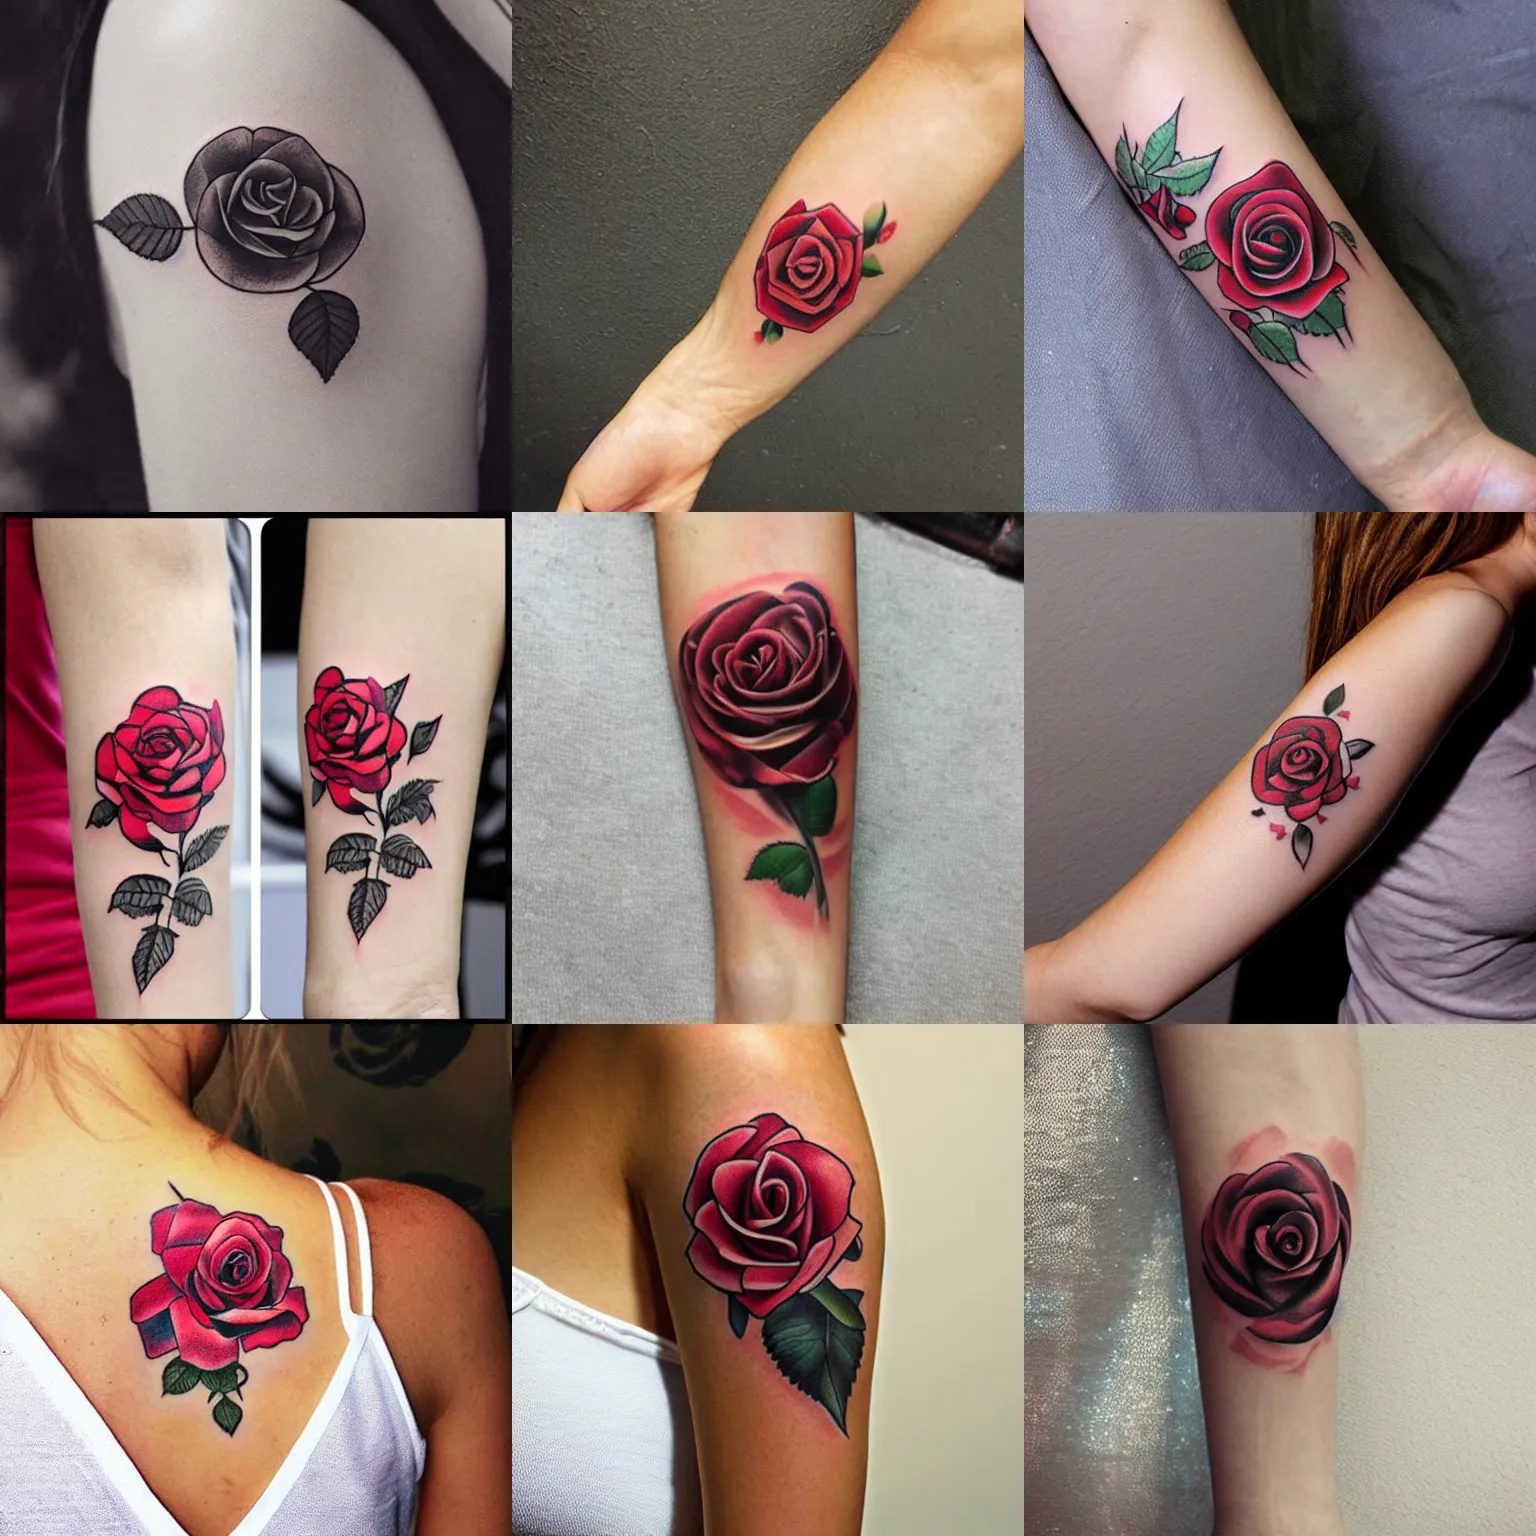 Prompt: rose tattoo, temporary tattoo